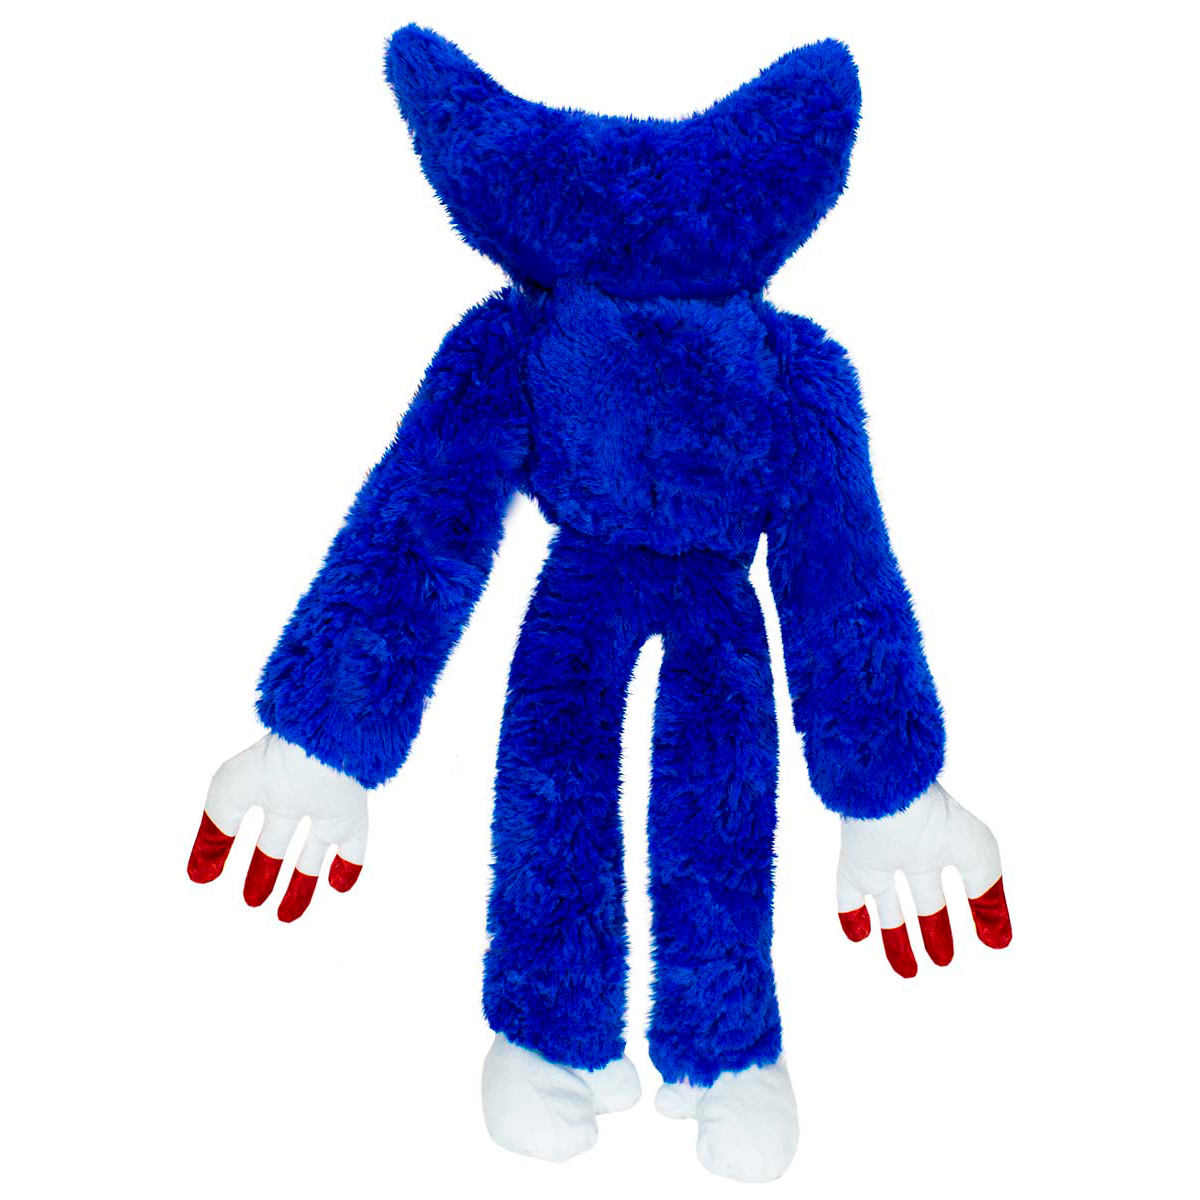 Мягкая игрушка Михи-Михи huggy Wuggy Killy Willy многоглазый синий 40см - фото 2